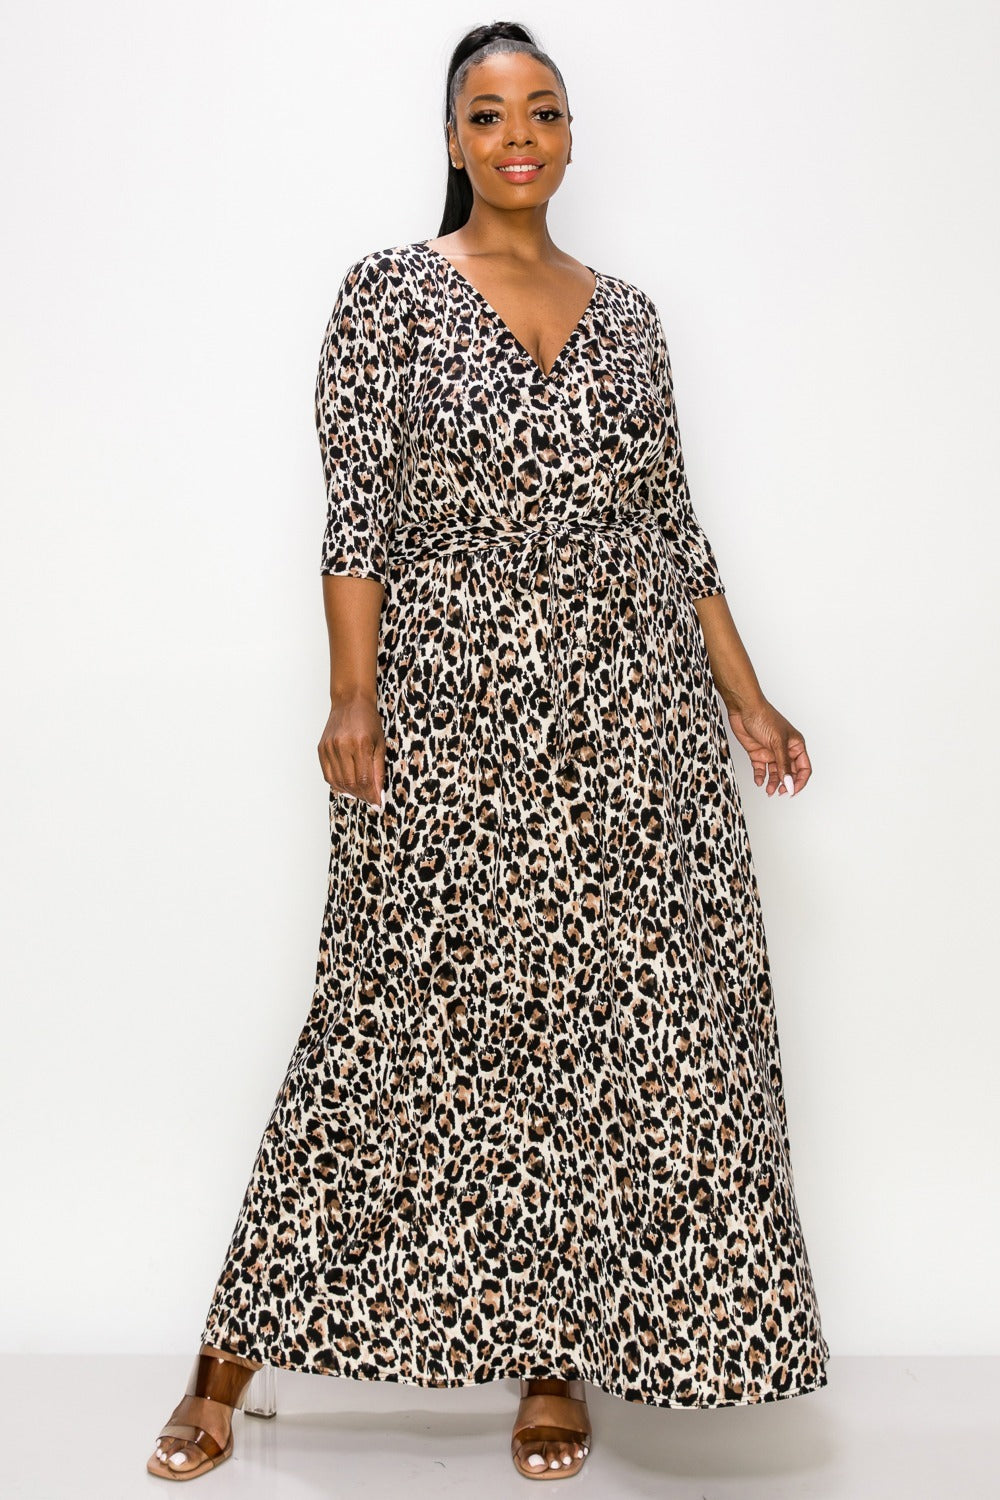 PLUS SIZE Cheetah Spot Print Wrap Dress – L V D